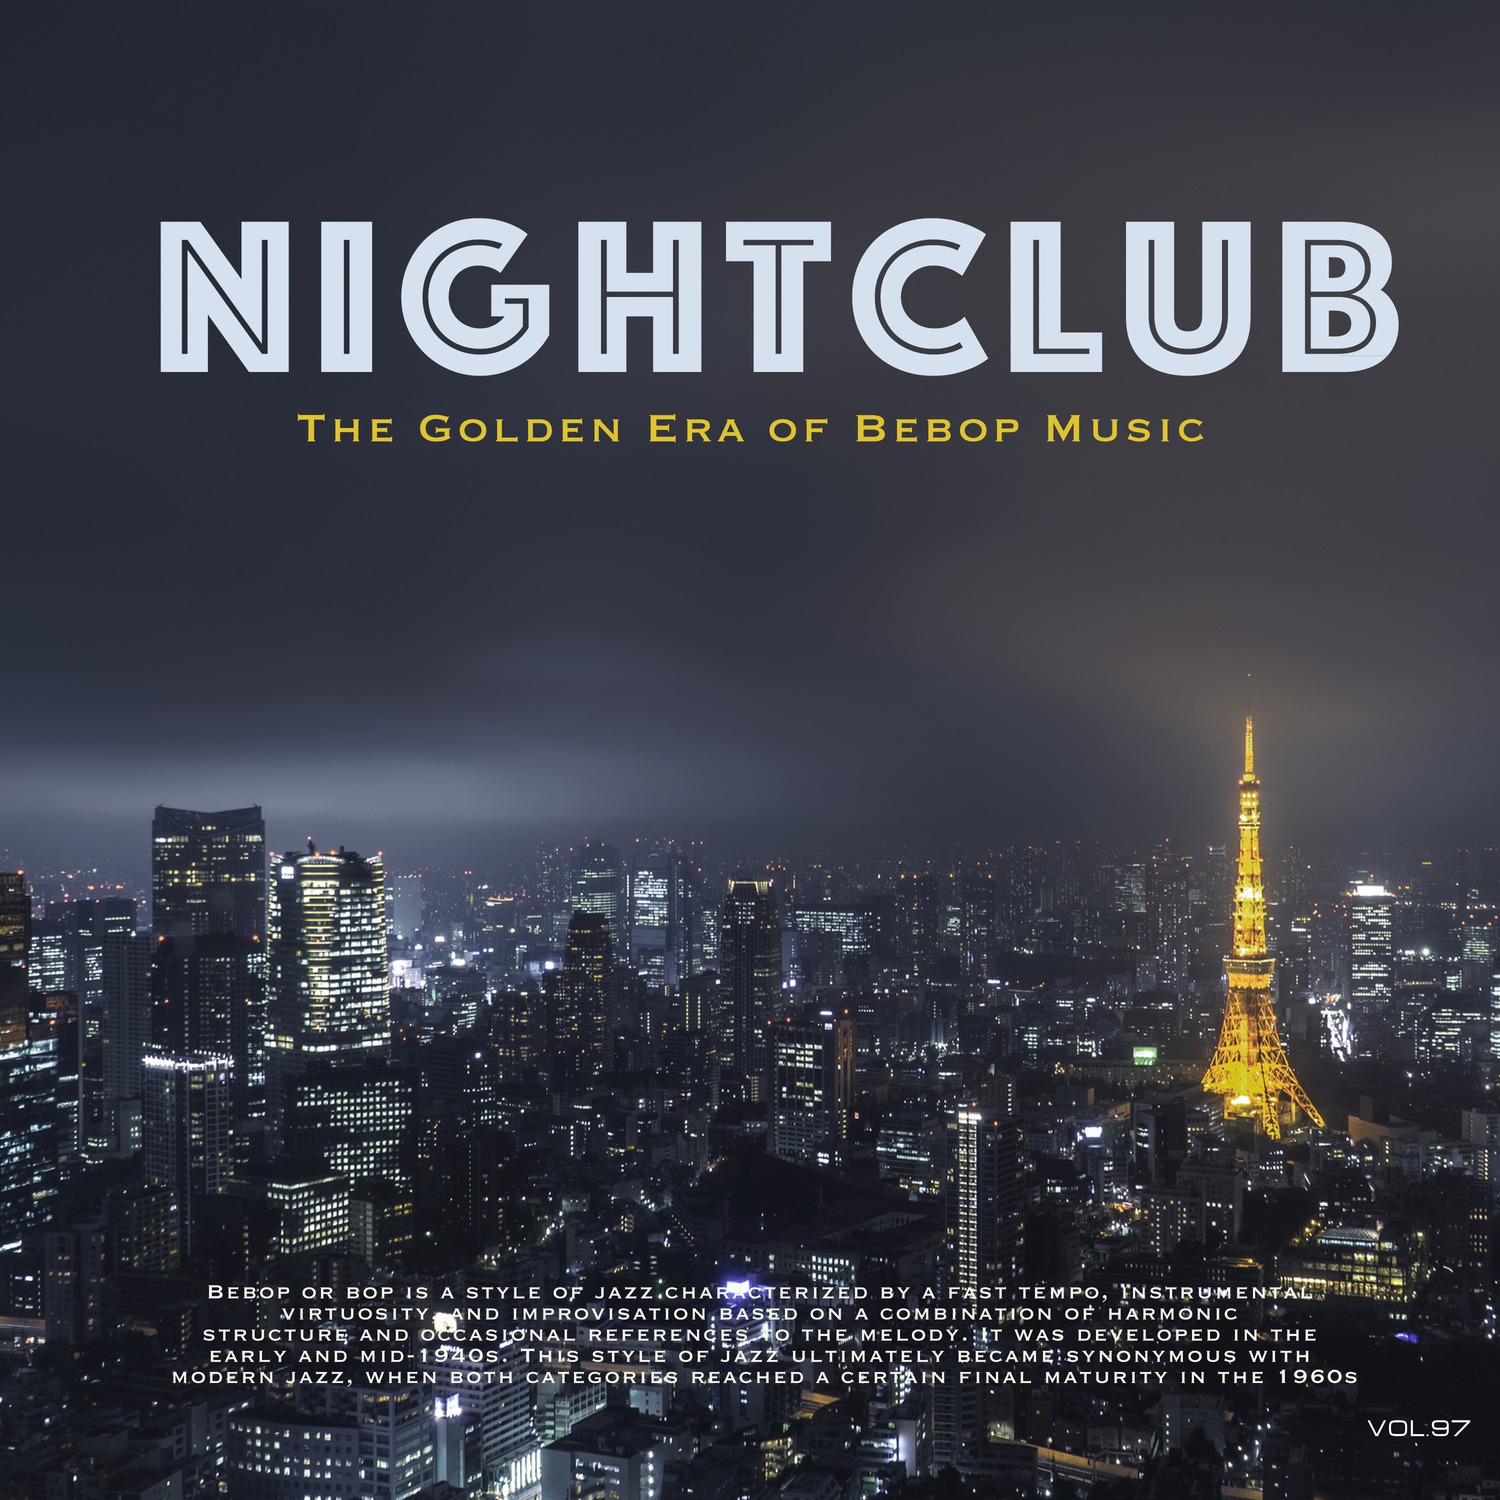 Nightclub, Vol. 97 (The Golden Era of Bebop Music)